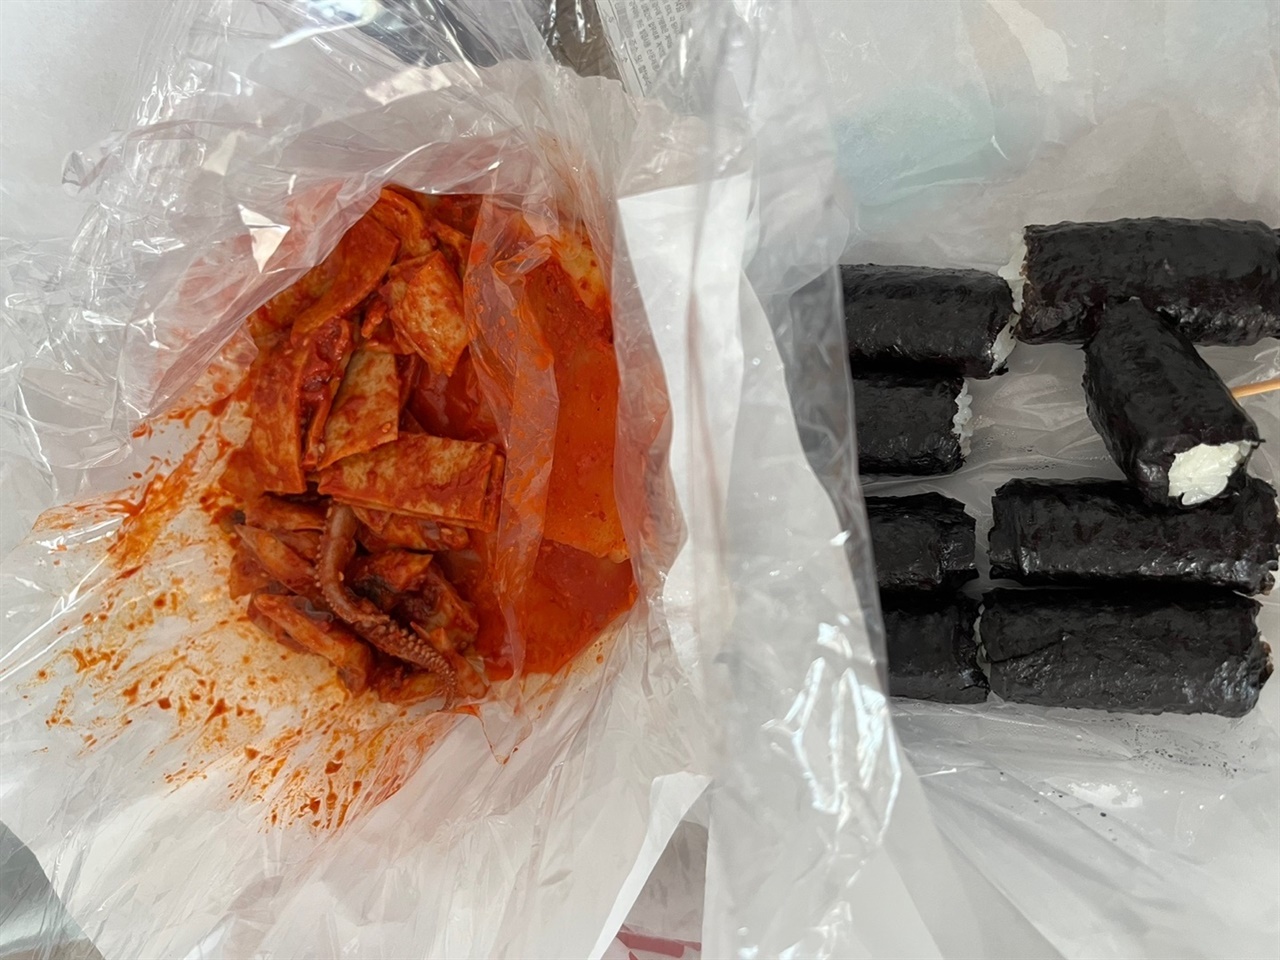 흰 종이로 차려진 오뎅과 무김치와 김밥 한상.